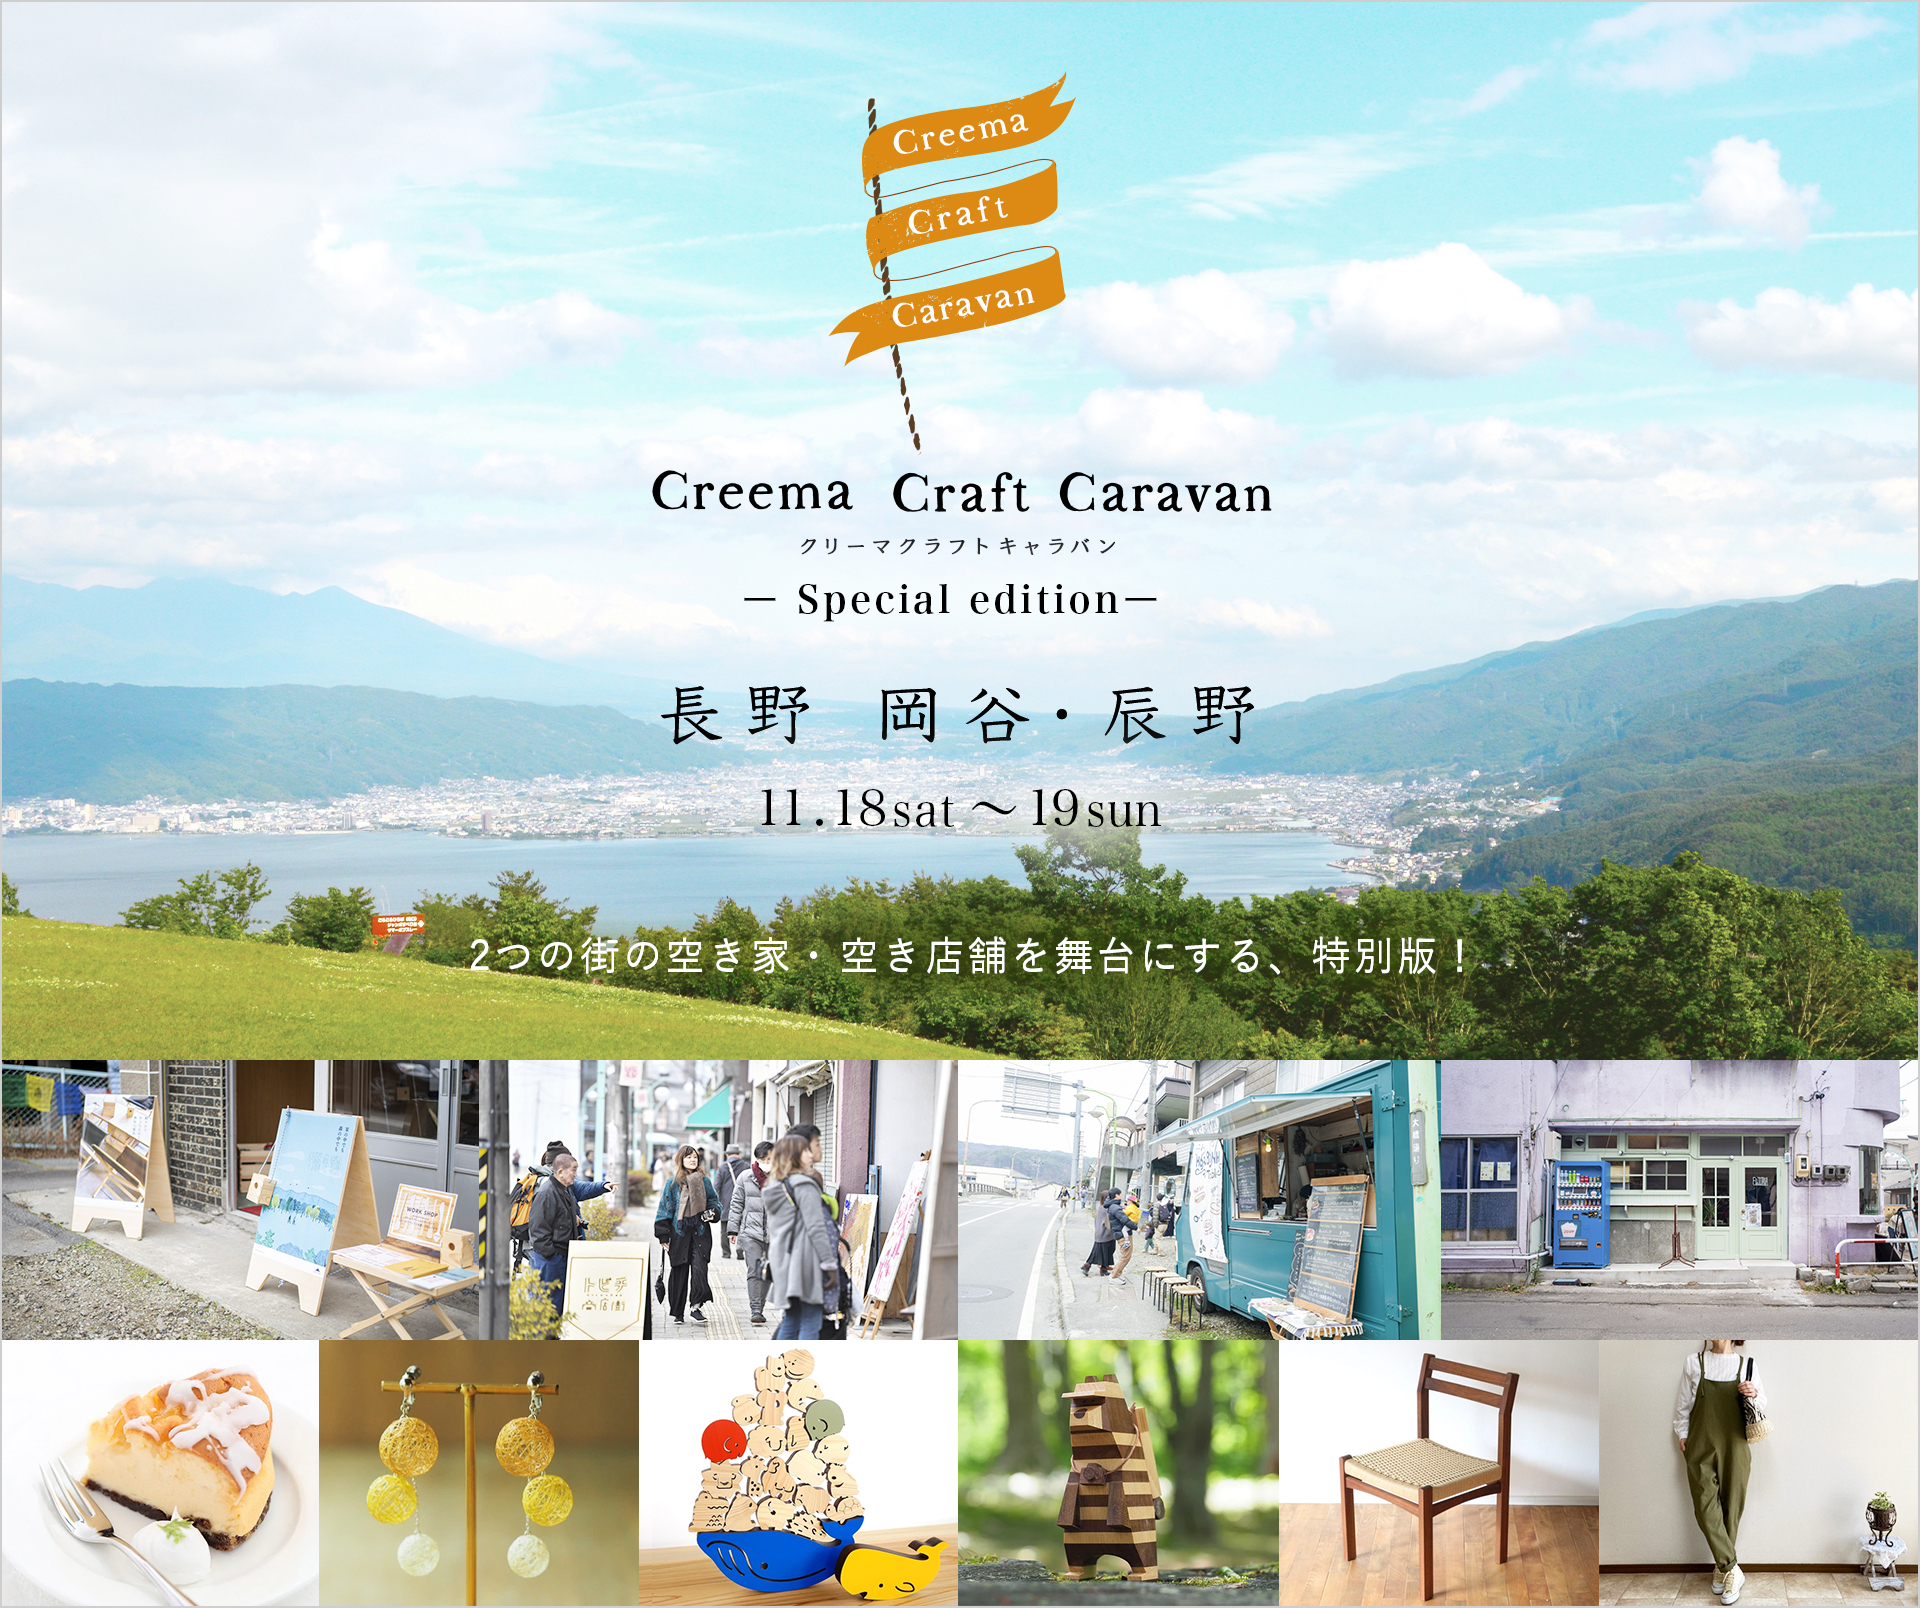 【お知らせ】Creema Craft Caravan